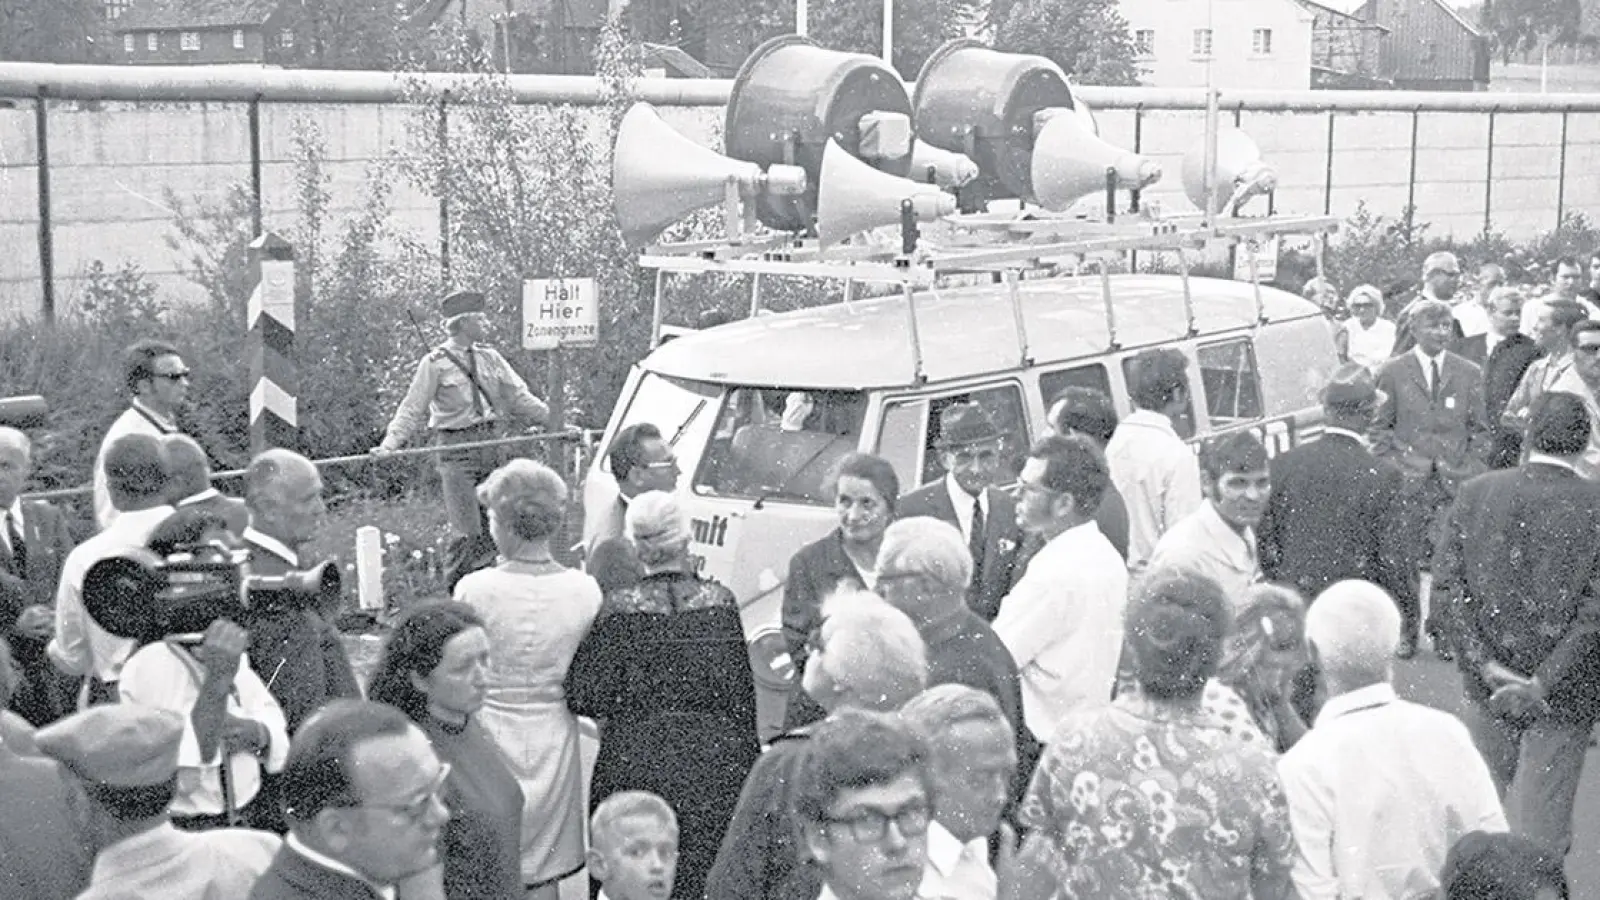 Das geteilte Dorf Mödlareuth galt jahrzehntelang als Symbol der Deutschen Teilung. Das obere Bild zeigt eine politische Kundgebung 1970. Auf dem unteren Bild hatten sich 1966 Kühe in den Grenzabsperrungen verlaufen. (Foto: Volke)